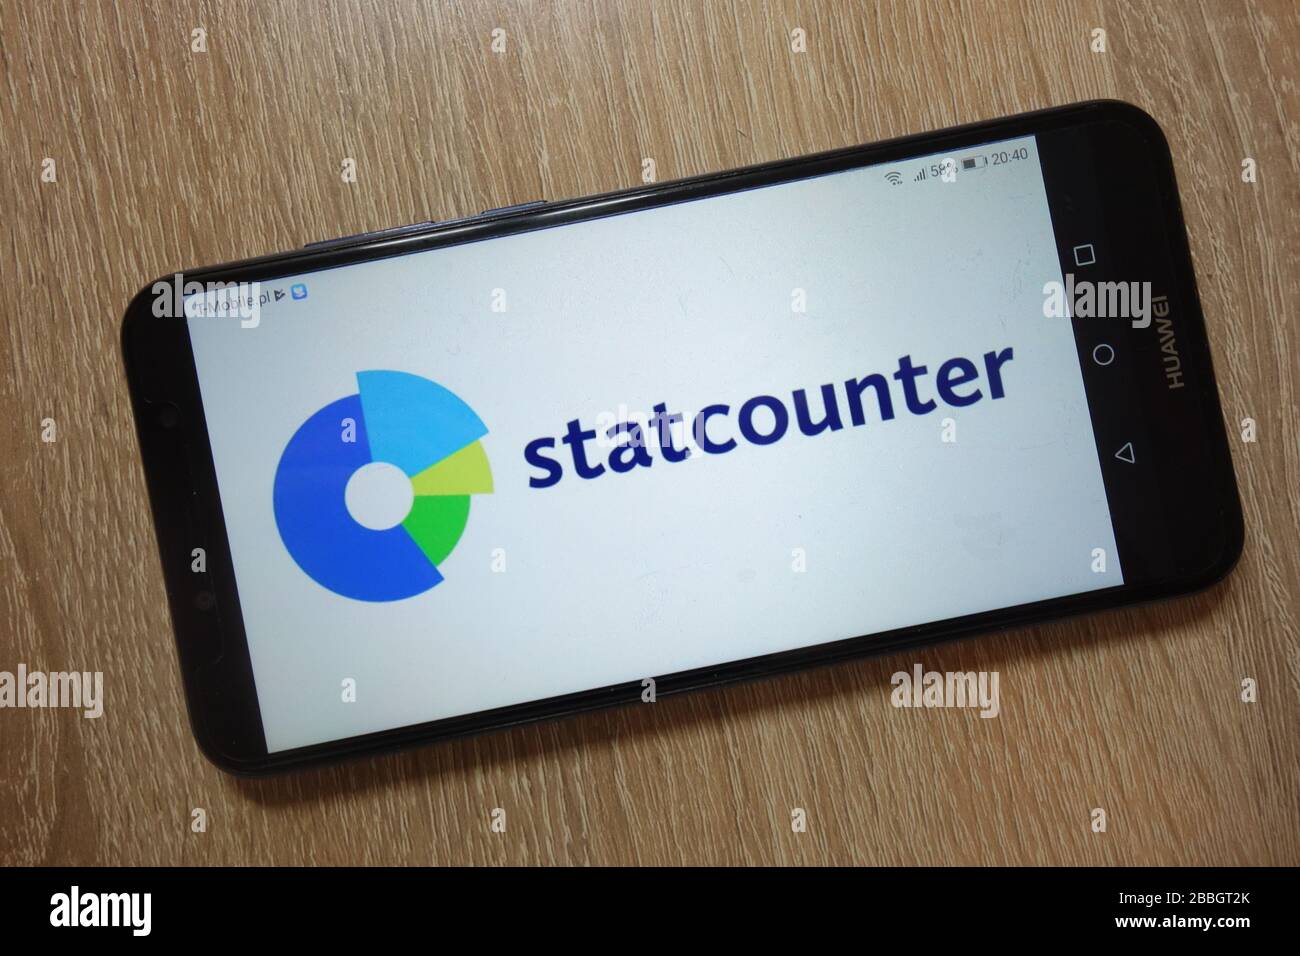 El logotipo de StatCounter se muestra en el smartphone Foto de stock